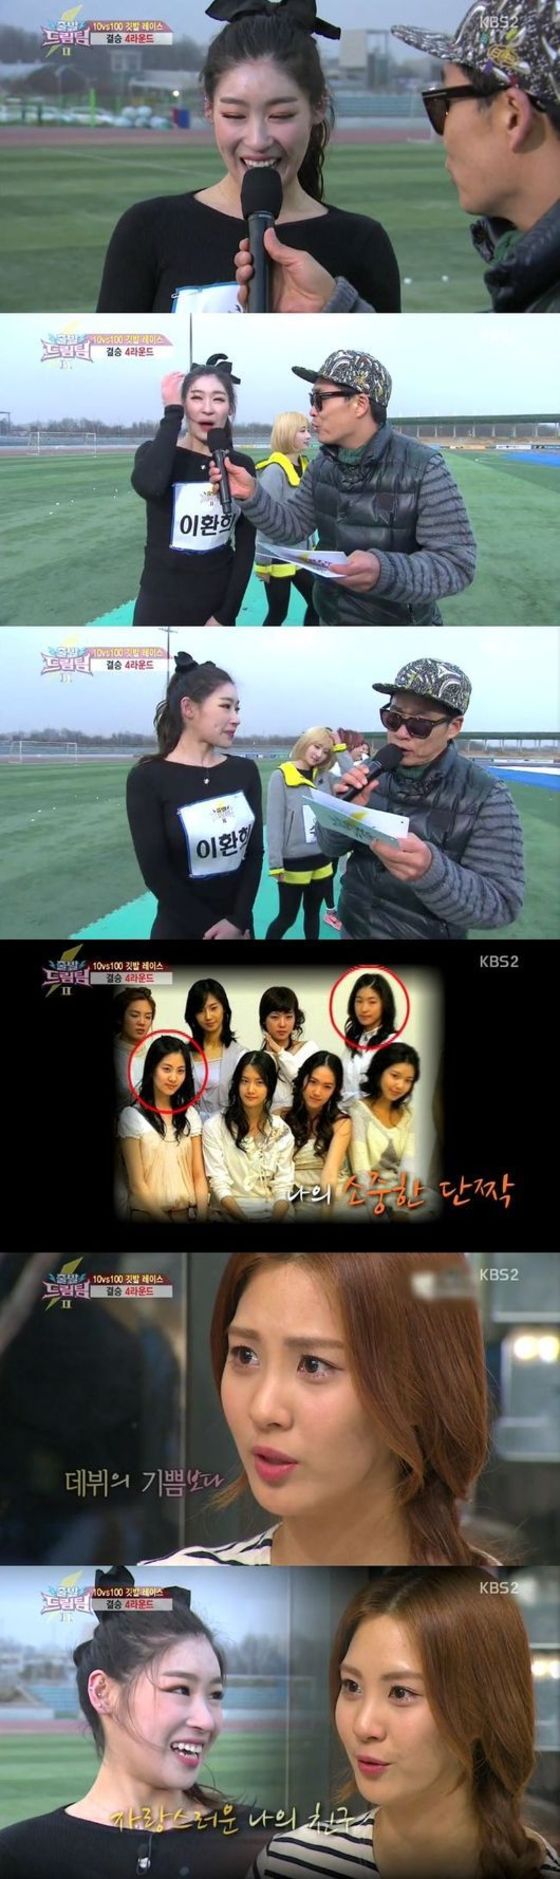 KBS2 ´출발 드림팀´ 방송 장면